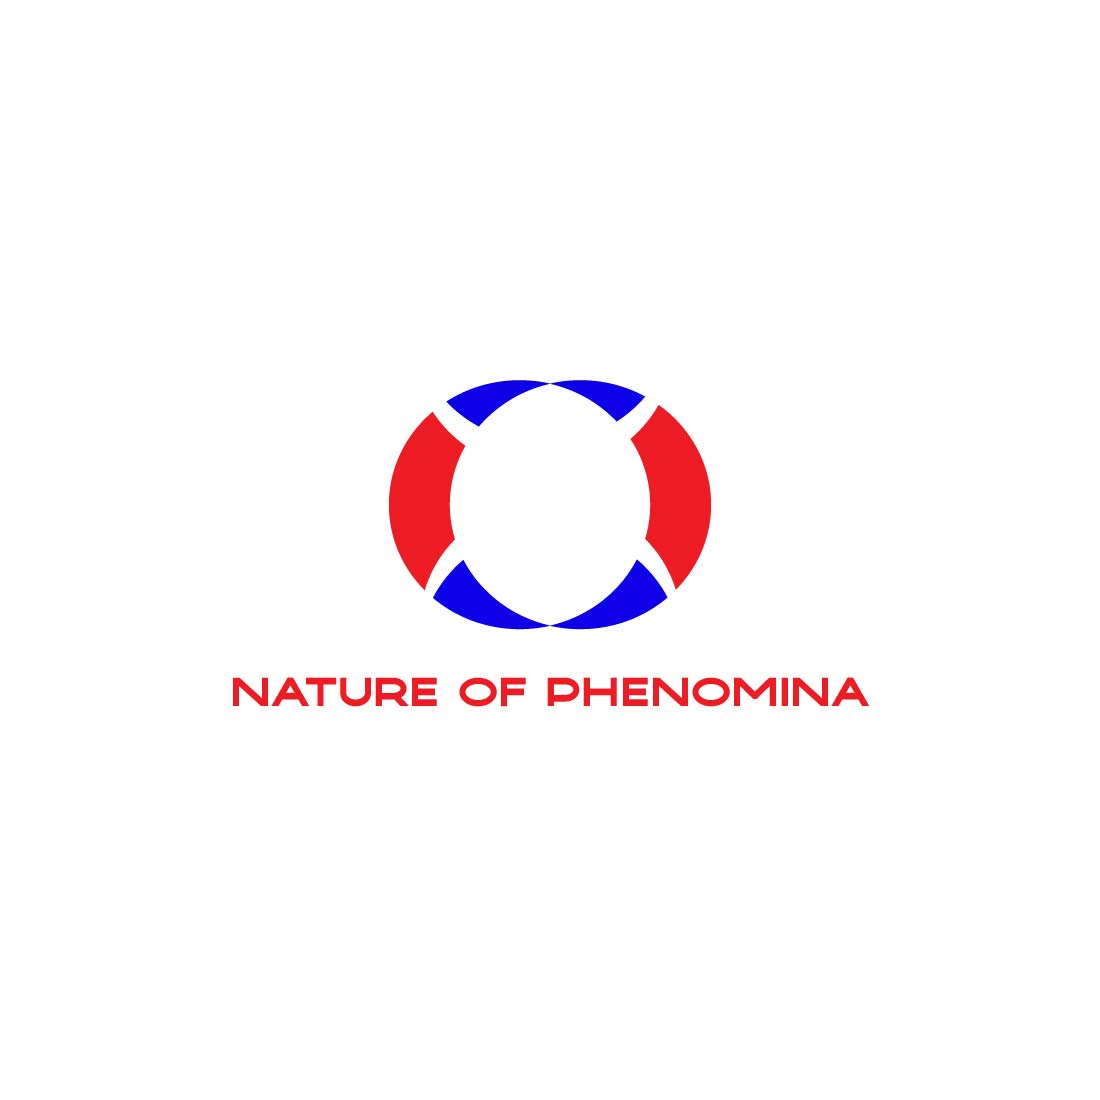 NATURE OF PHENOMENA cover image.